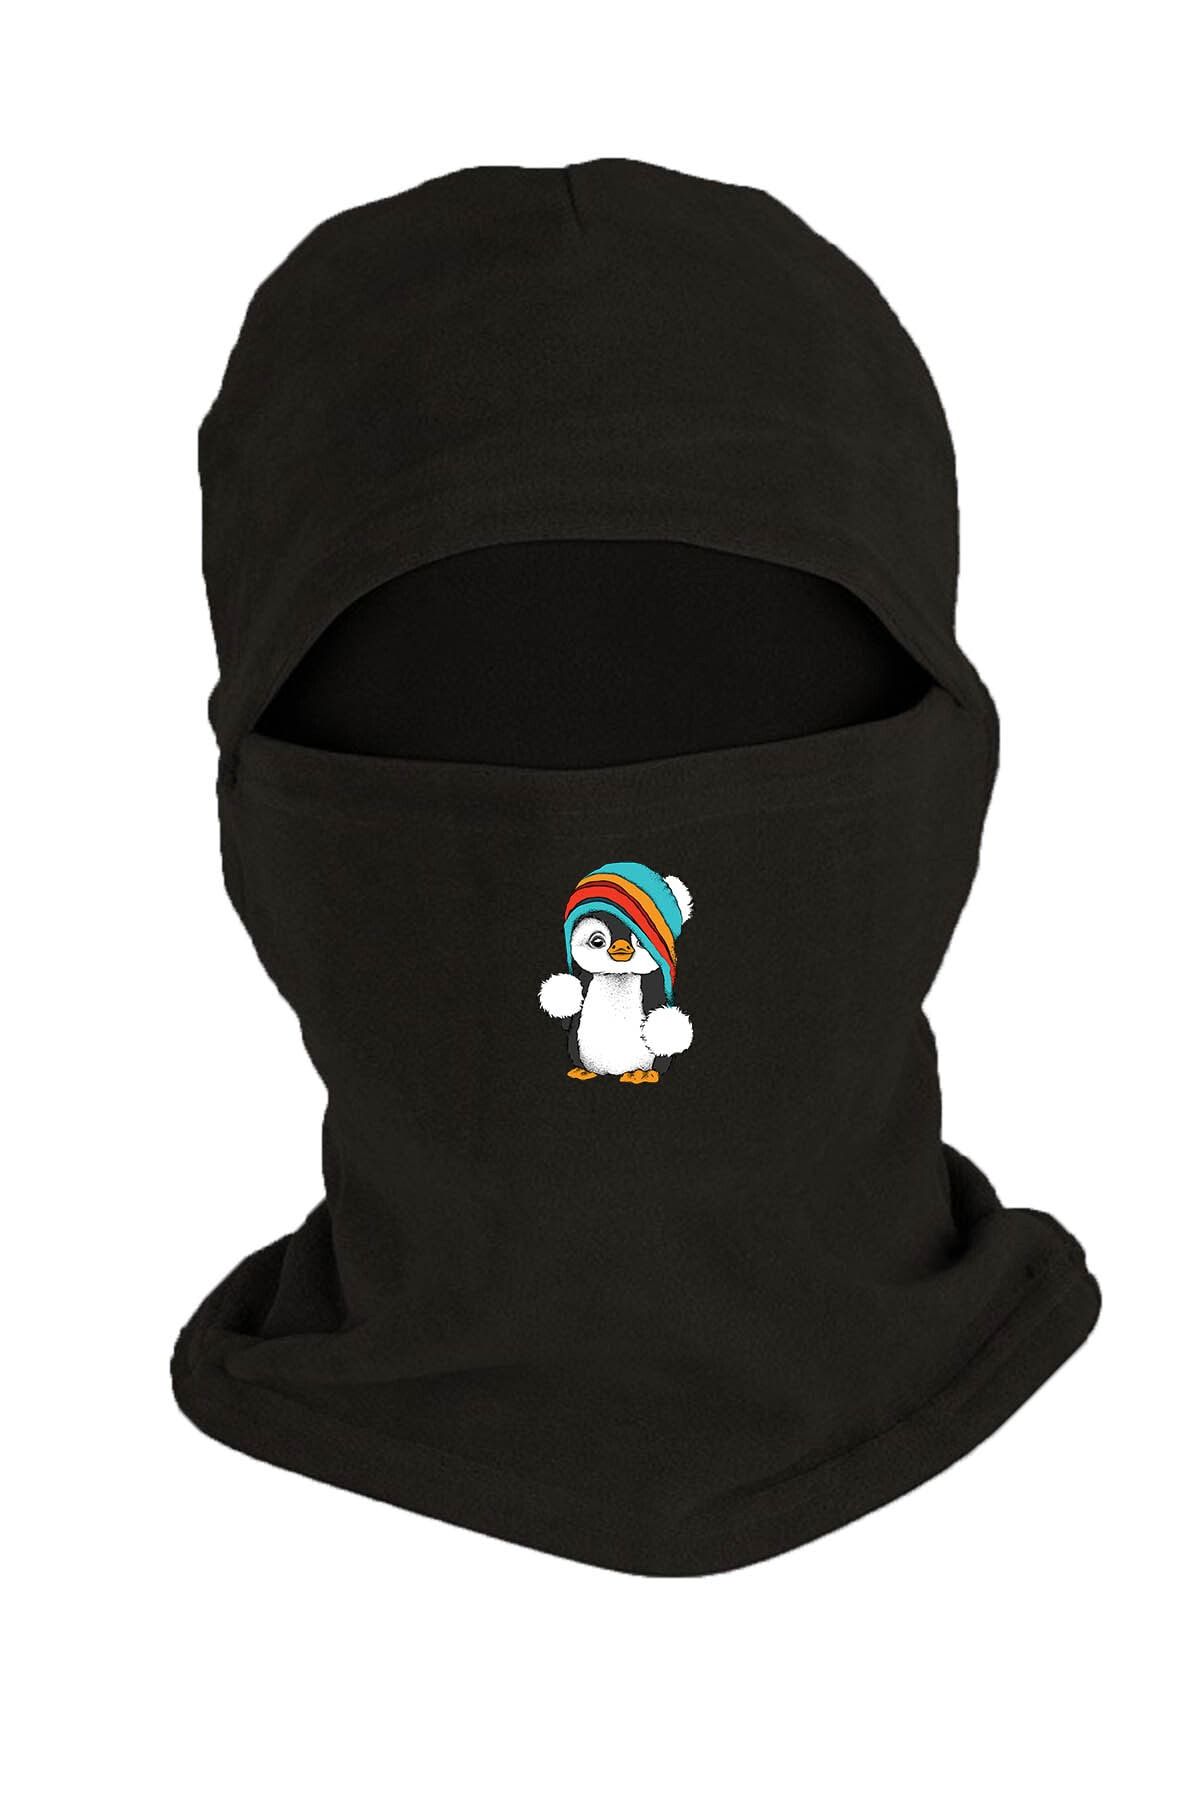 Zeron Tasarım Bereli Penguen Baskılı Kışlık Polar Kar Maskesi Siyah Bll777